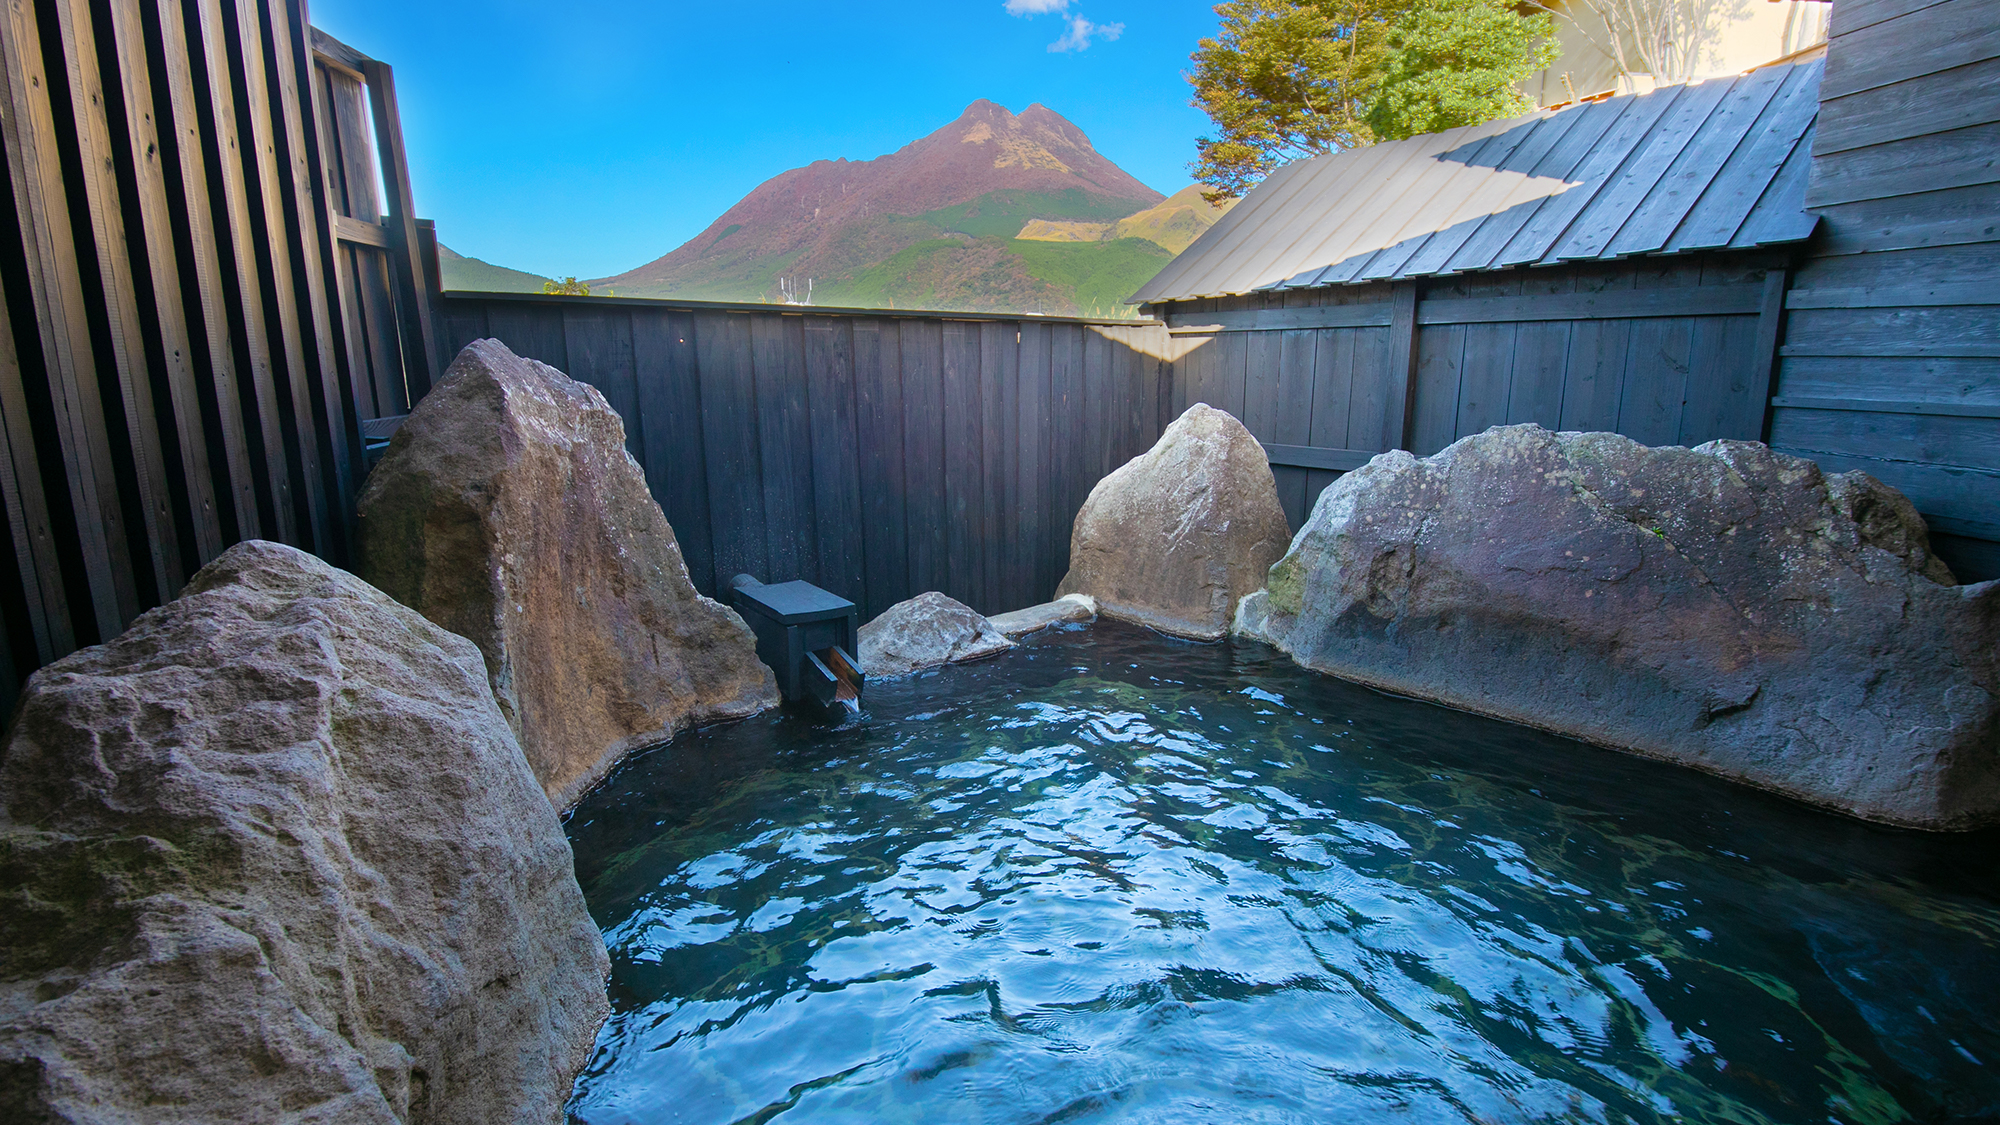 目の前に由布山を望む”貸切露天風呂”昼は由布岳の雄大な姿を望み夜は美しい星空に彩られます。